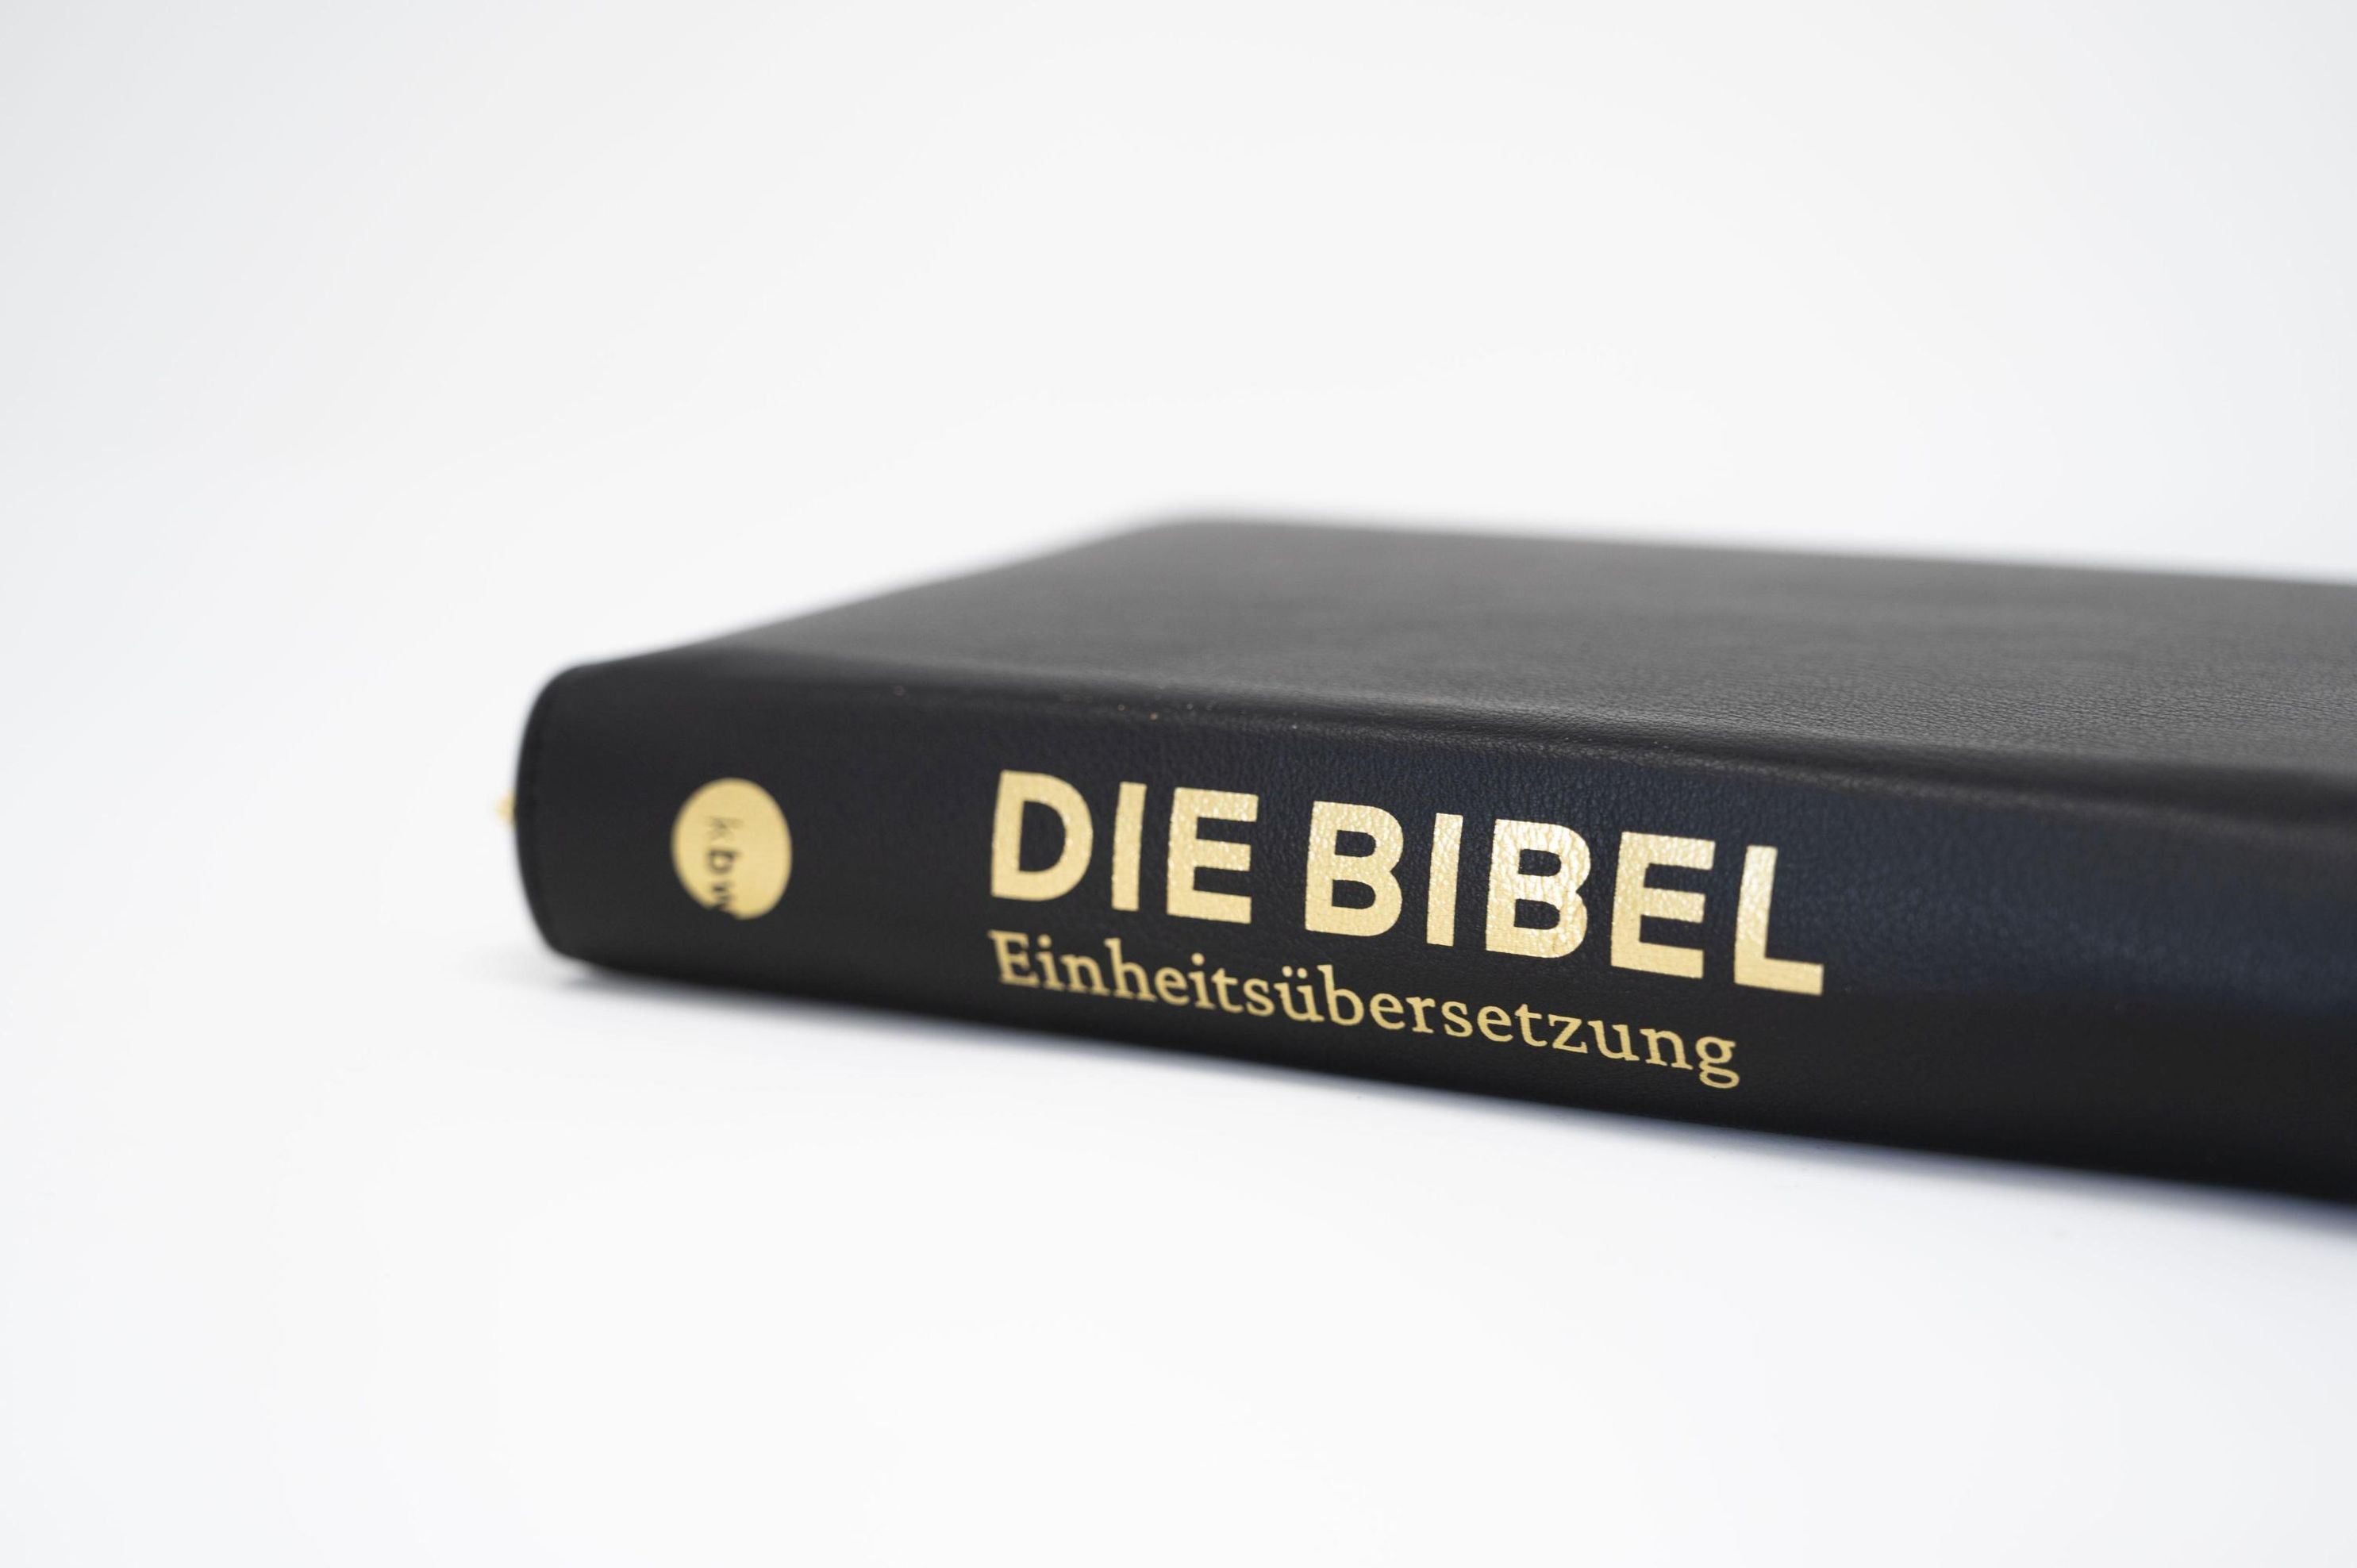 Die Bibel, Einheitsübersetzung Revision 2917, Meriva-Leder schwarz Buch  versandkostenfrei bei Weltbild.de bestellen